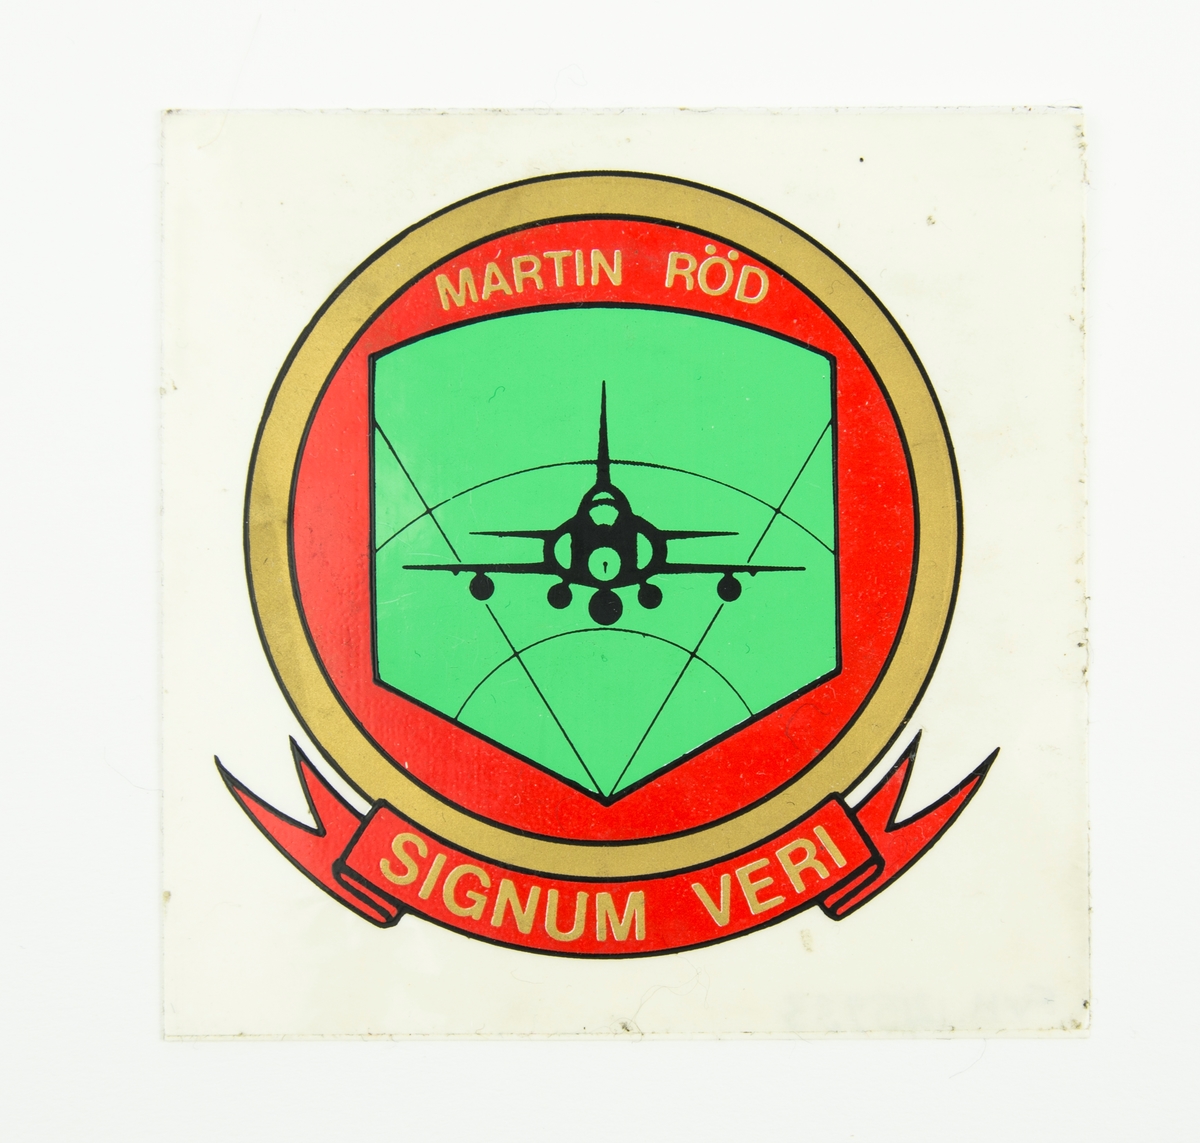 Divisionsemblem för Bråvalla flygflottilj 1/F13 Norrköping.
På dekalen står: Martin röd, Signum veri dvs "Sanningstecken”.